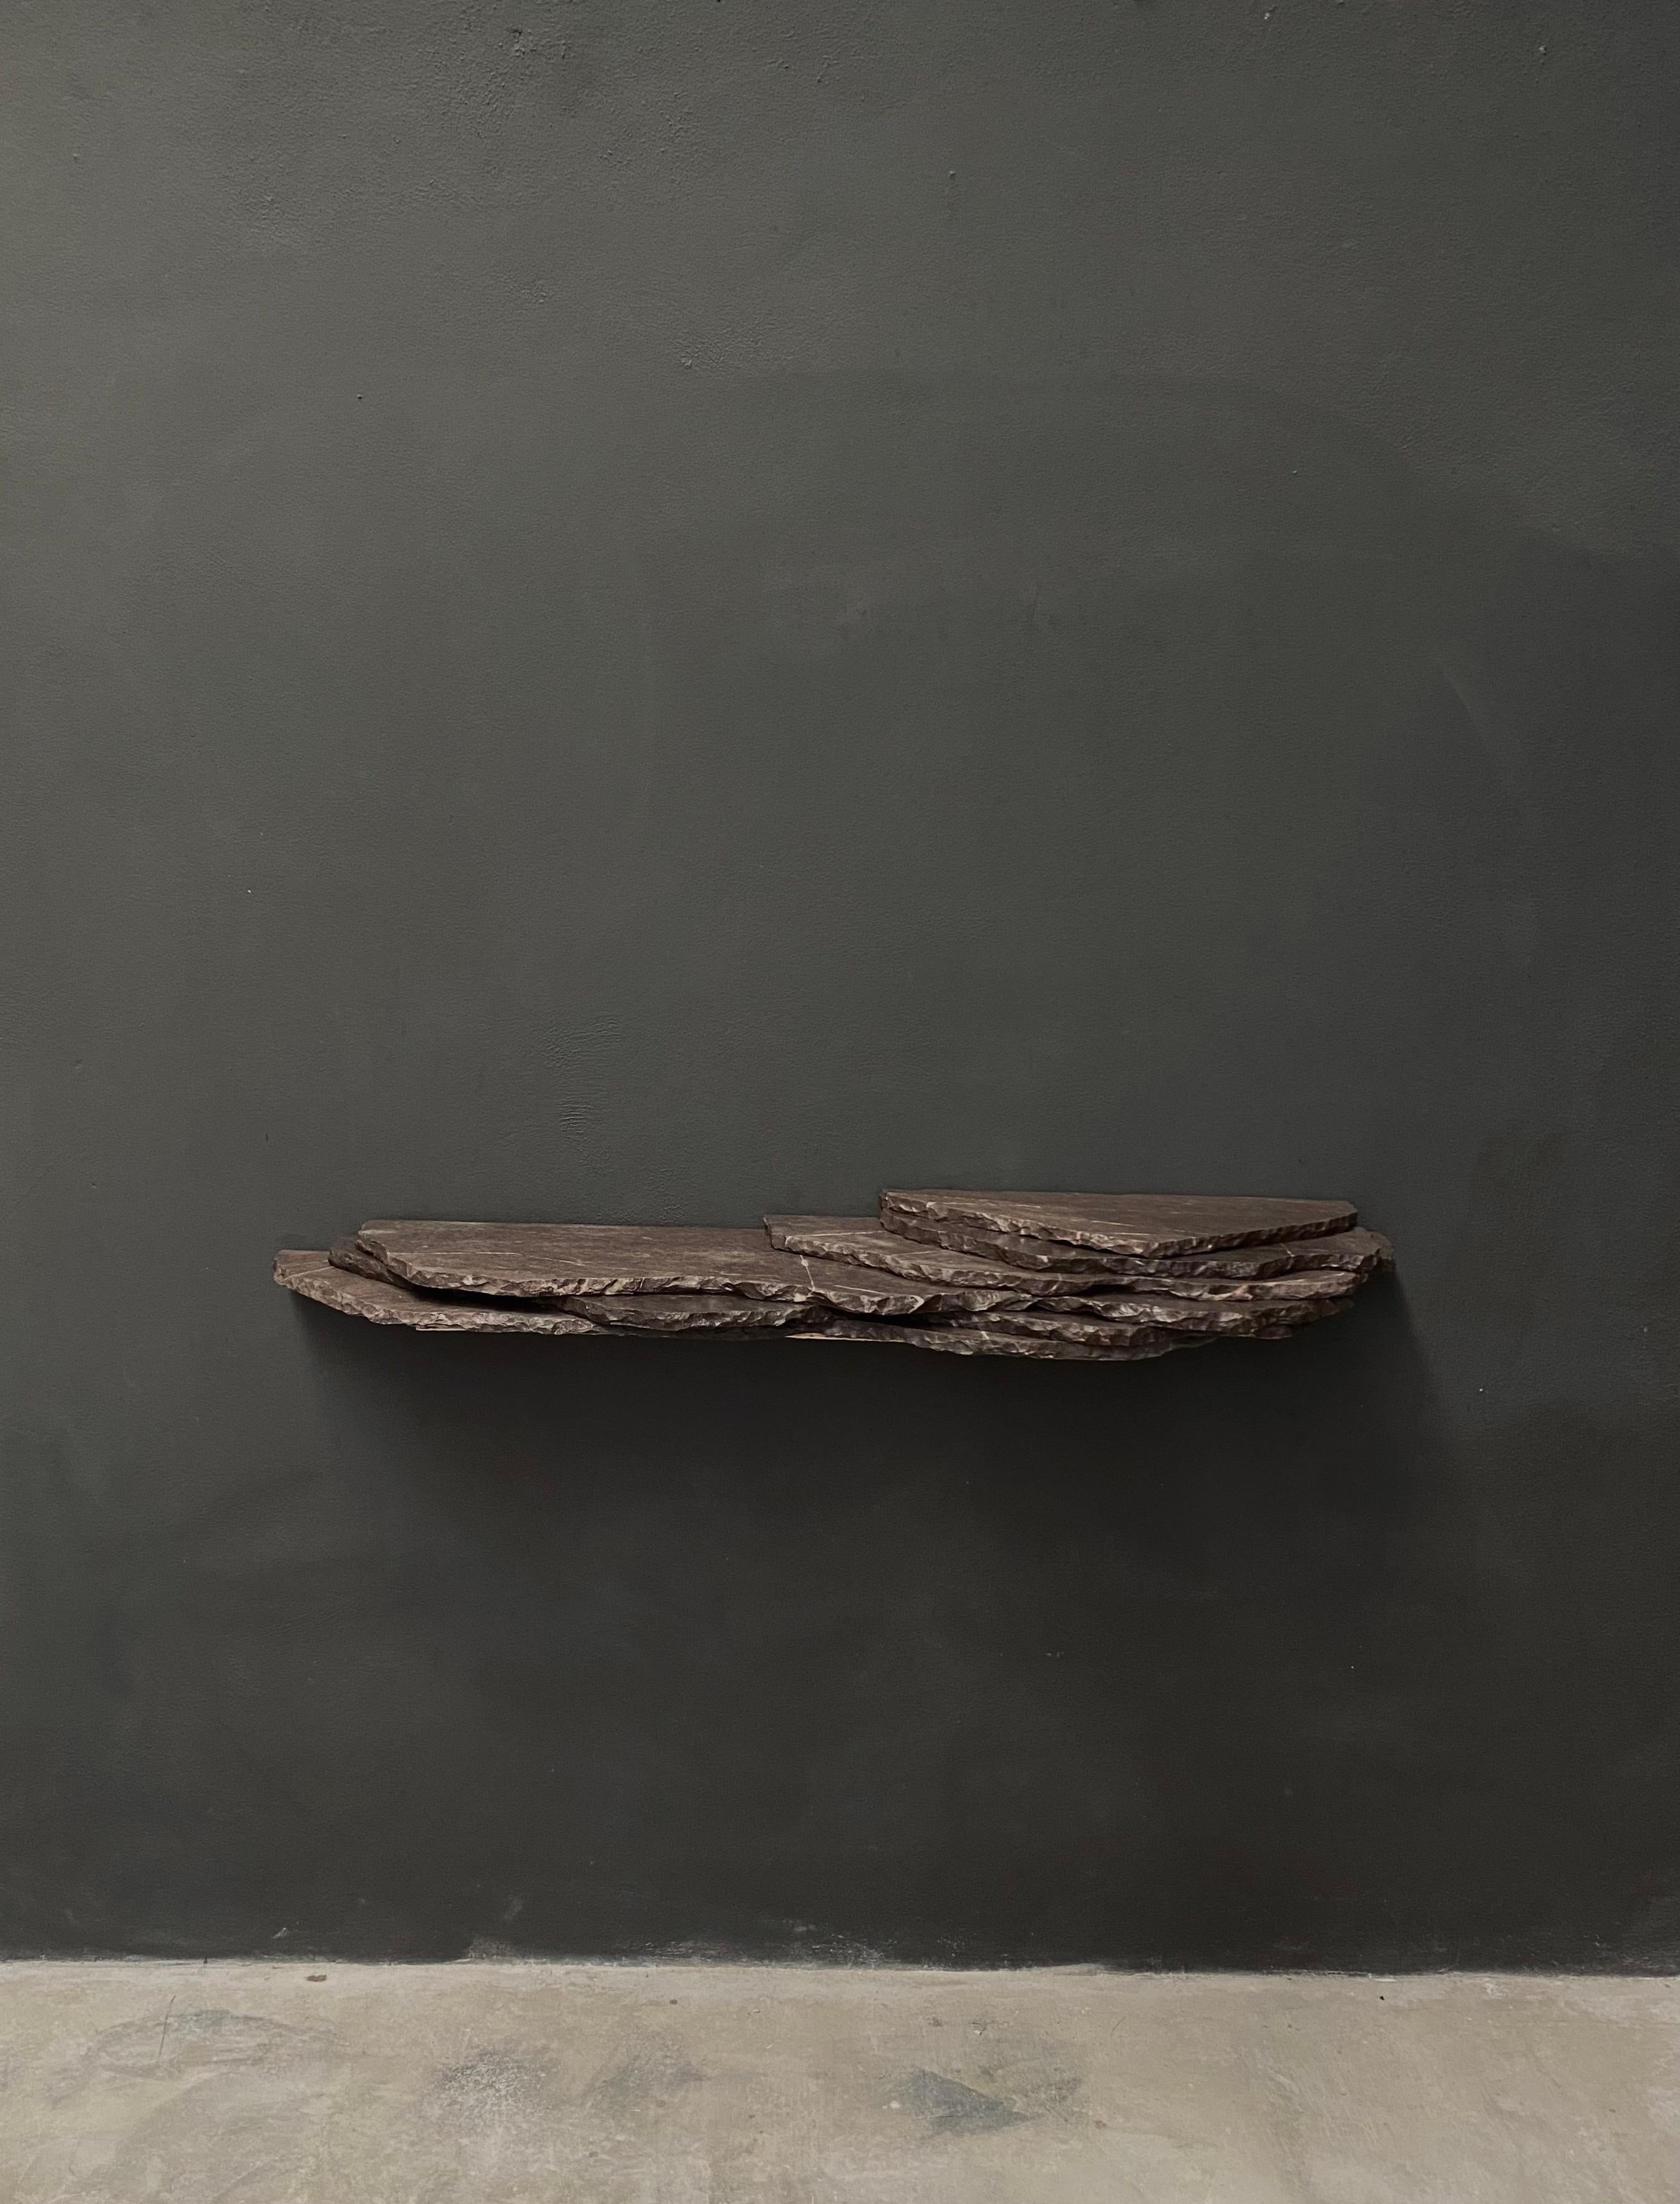 Strata-Konsole von Andres Monnier
Einzigartig
Abmessungen: T 25 x B 150 x H 12 cm.
MATERIAL: grauer Marmor.

Biografie des Designers

Treko concrete ist ein mexikanisches Studio mit Sitz in Ensenada, das sich zum Ziel gesetzt hat, funktionale,